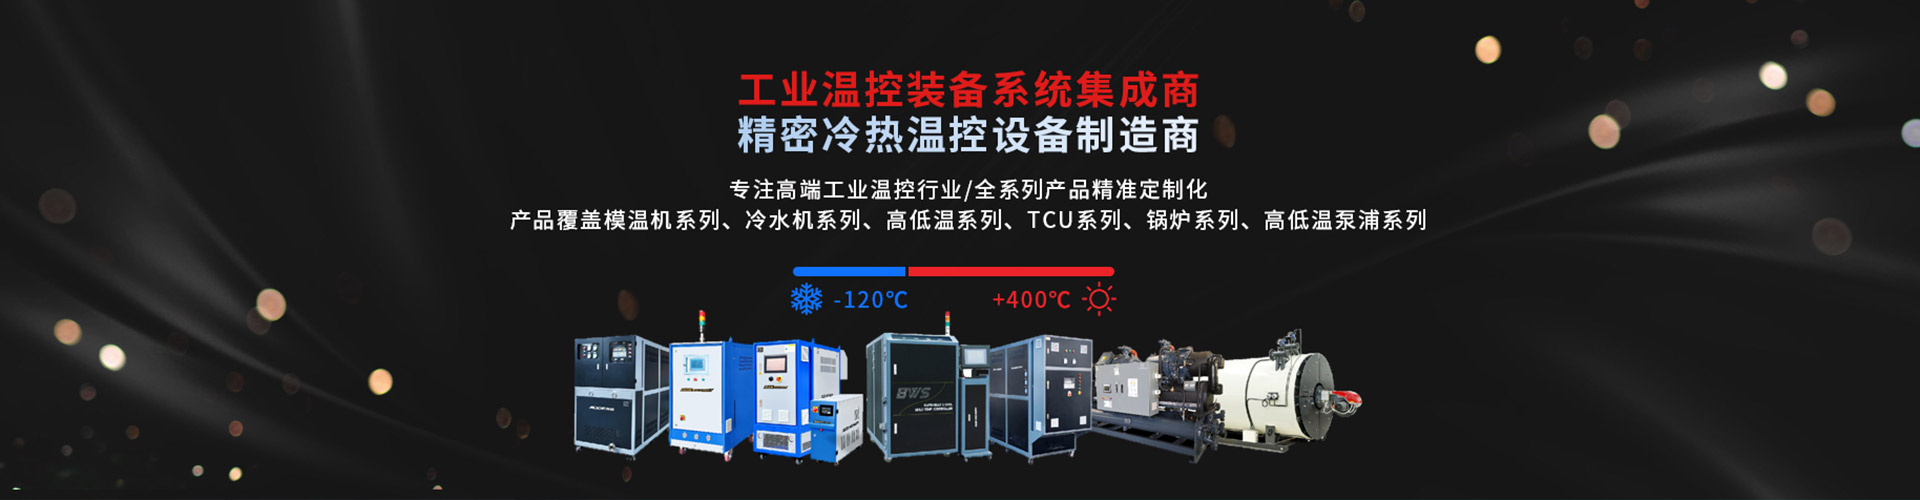 深圳市奧德機械有限公司 精密冷熱溫控社保制造商-專注高端工業溫度控制